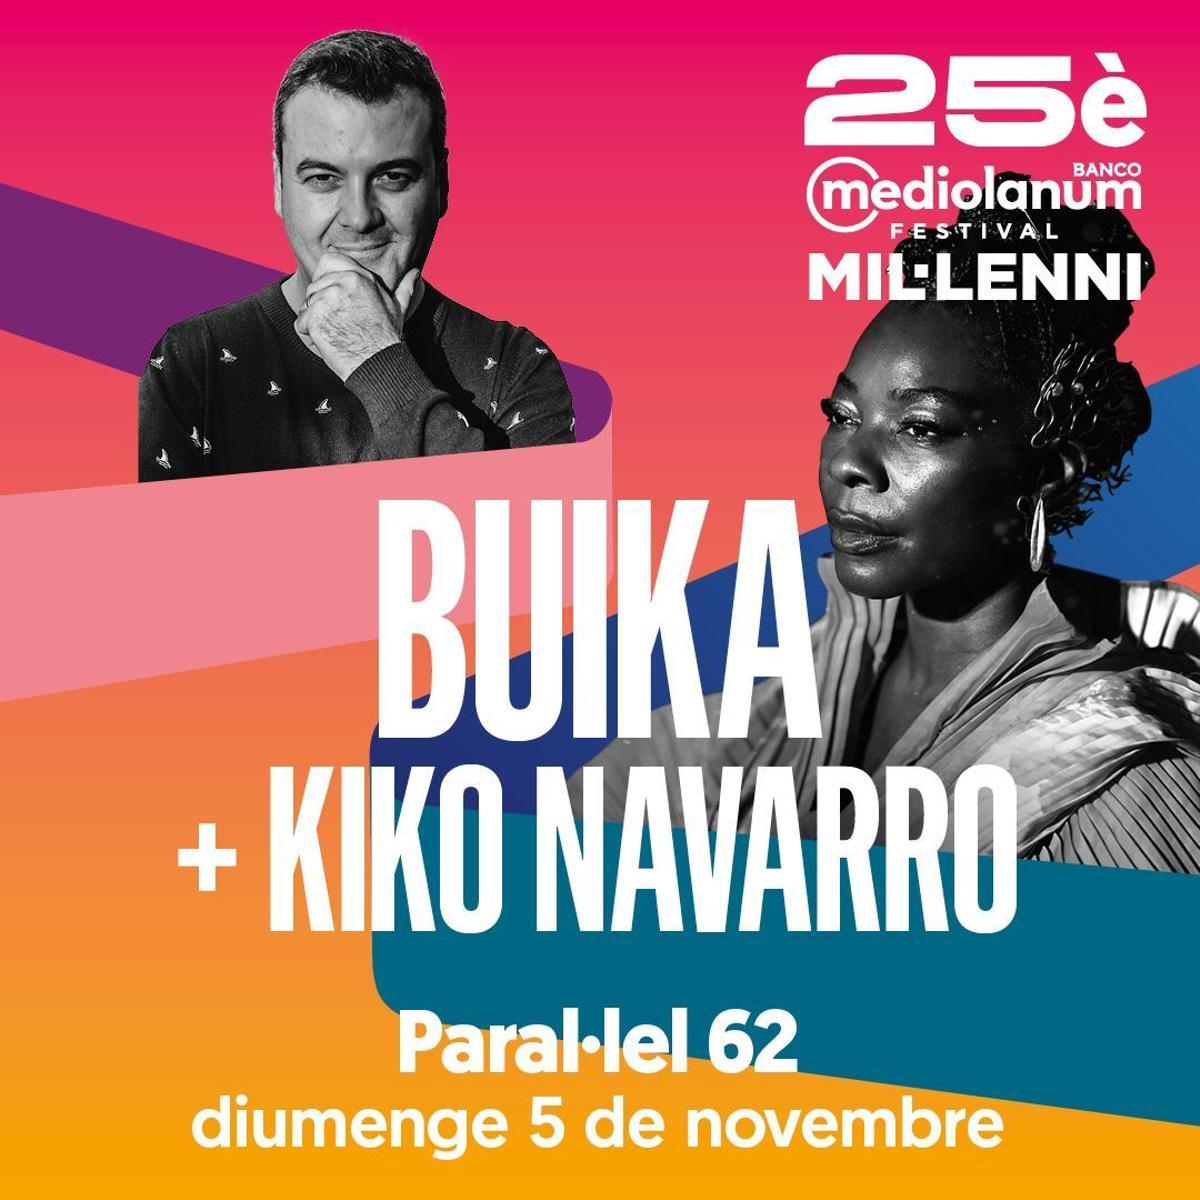 Barcelona, primera parada de Buika y Kiko Navarro